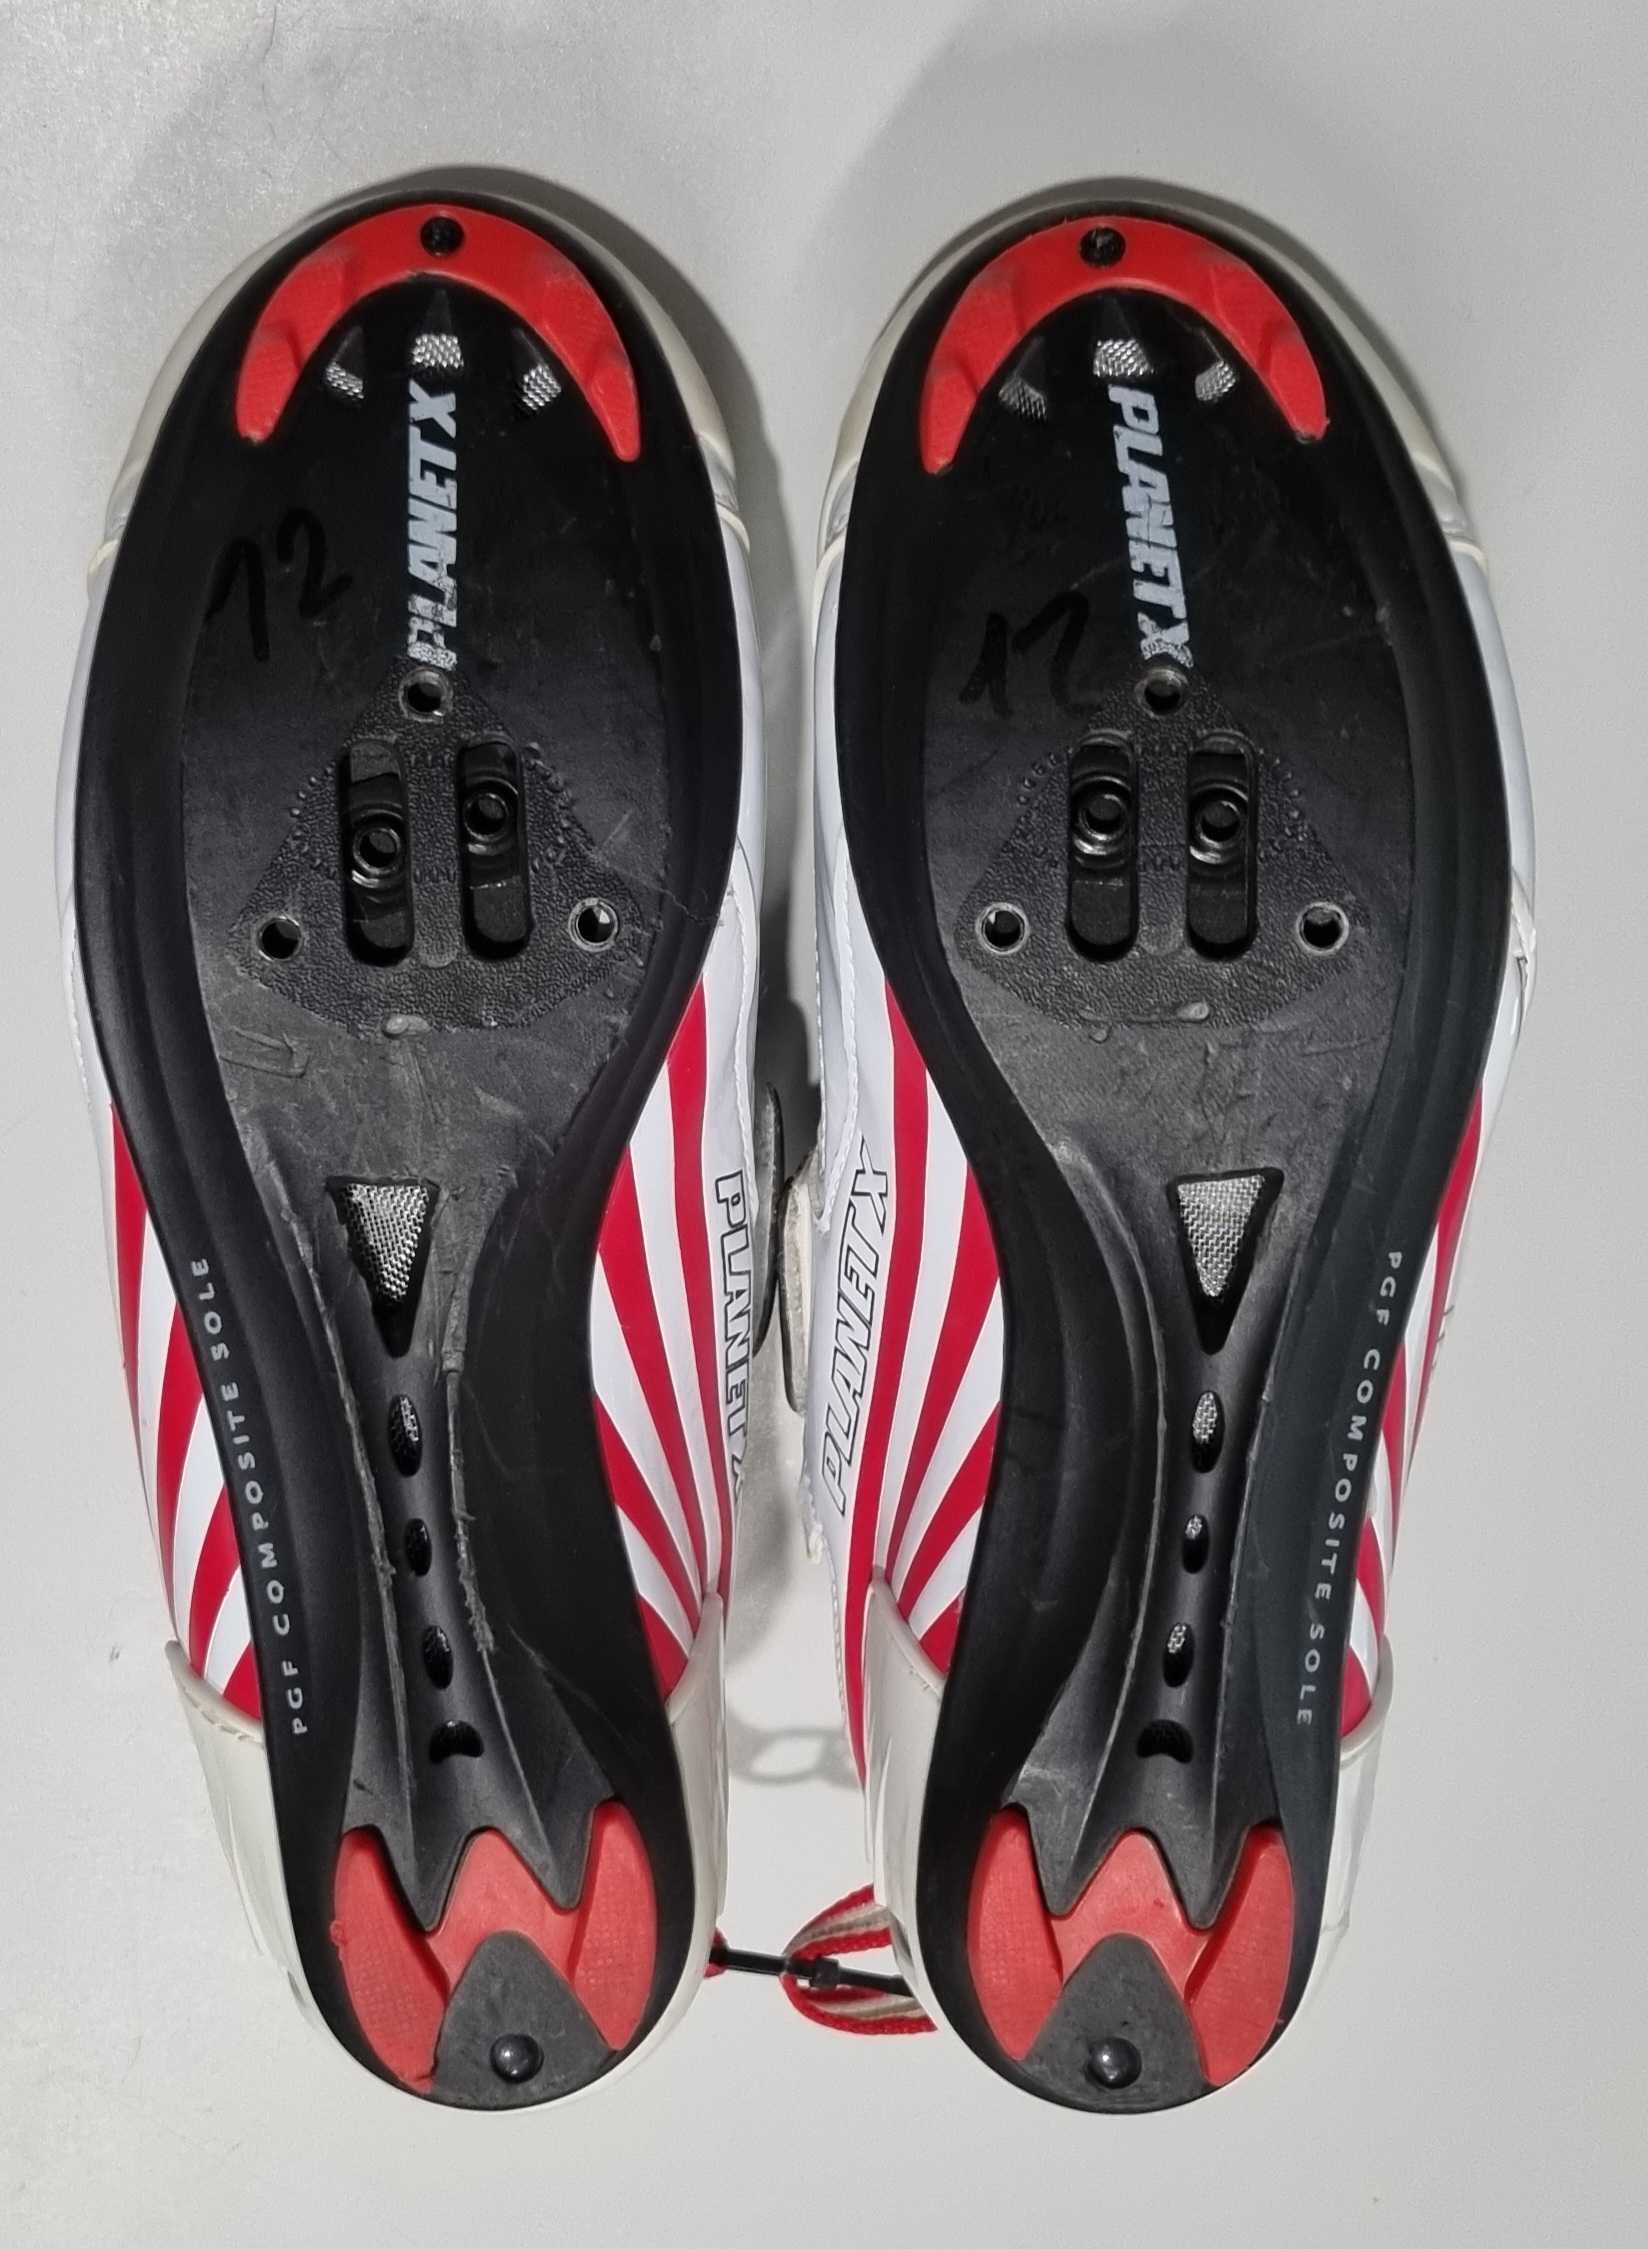 Buty kolarskie Planet X TRX Triathlon Shoes rozm 39 wkładka 24,5cm